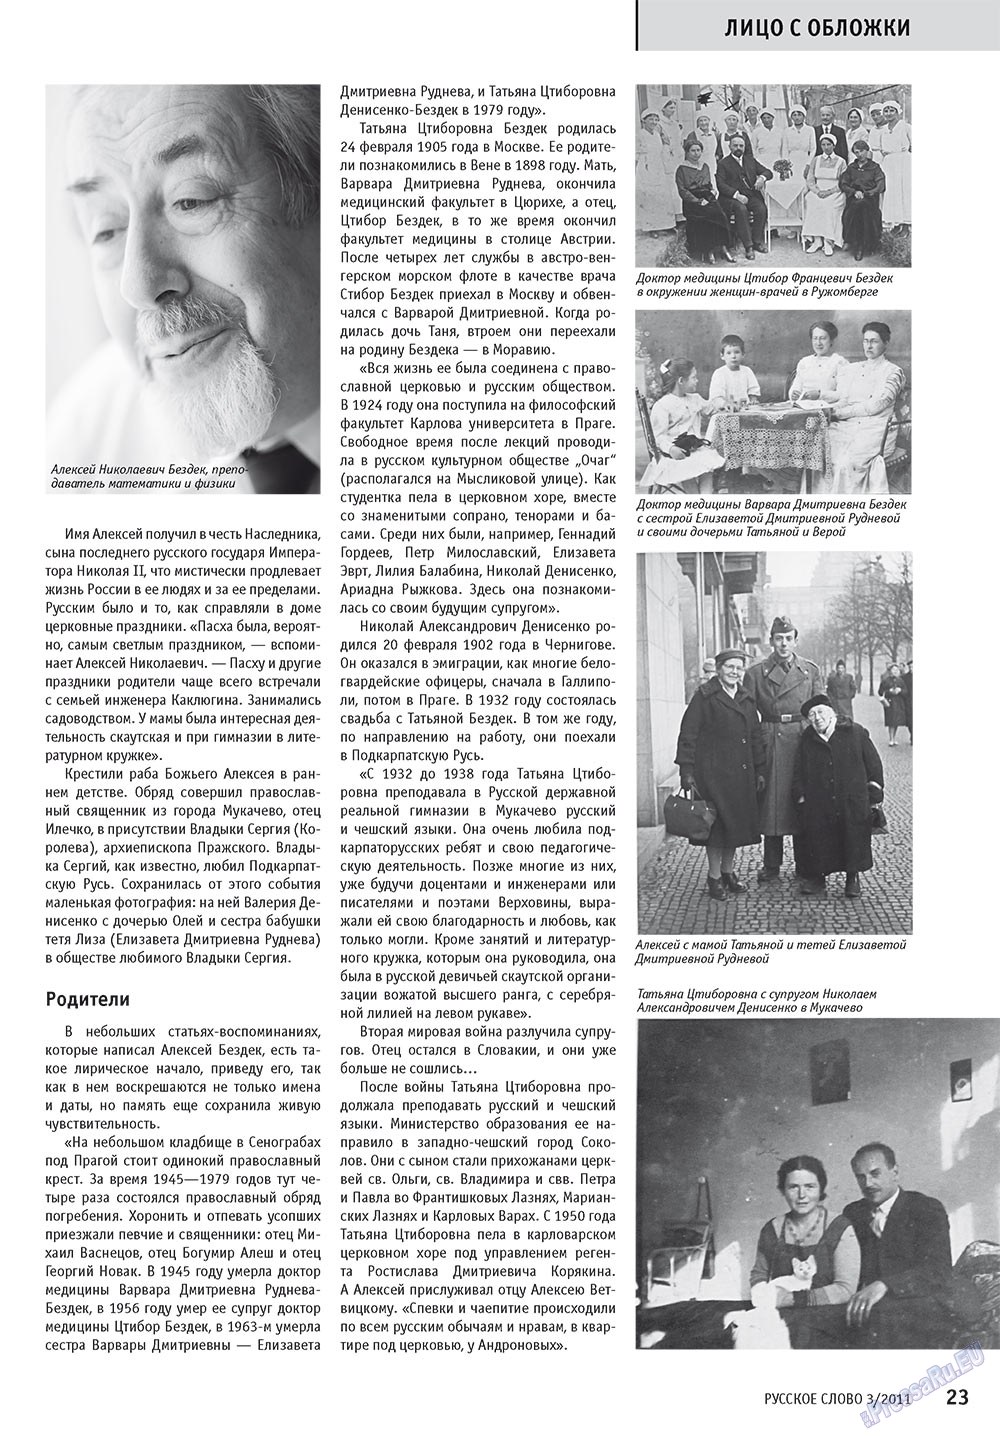 Русское слово, журнал. 2011 №3 стр.25